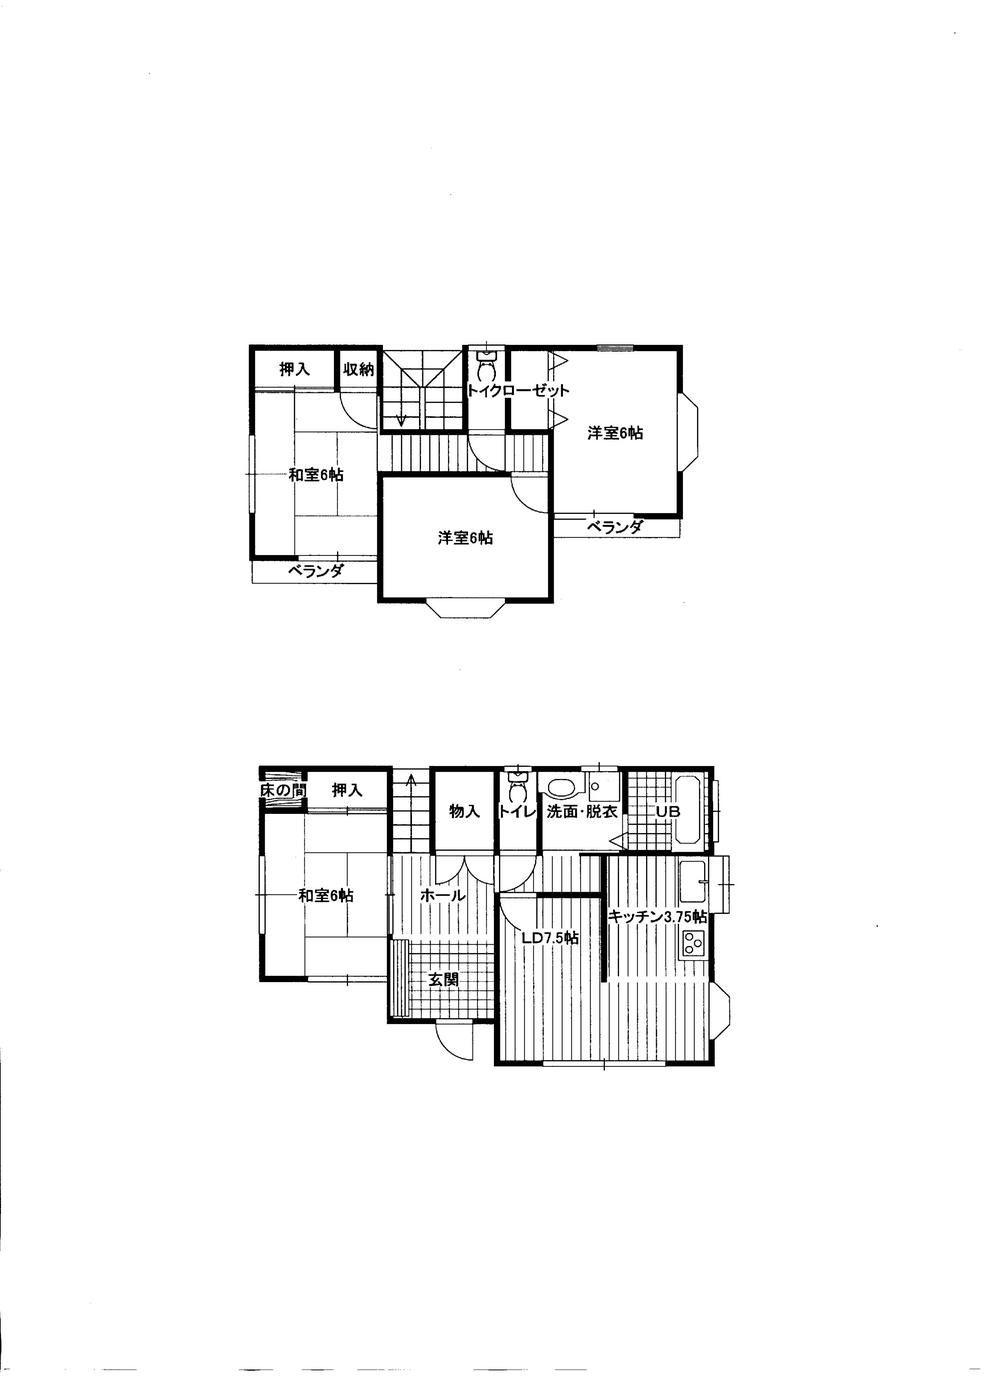 Floor plan. 13 million yen, 4LDK, Land area 181.83 sq m , Building area 93.57 sq m